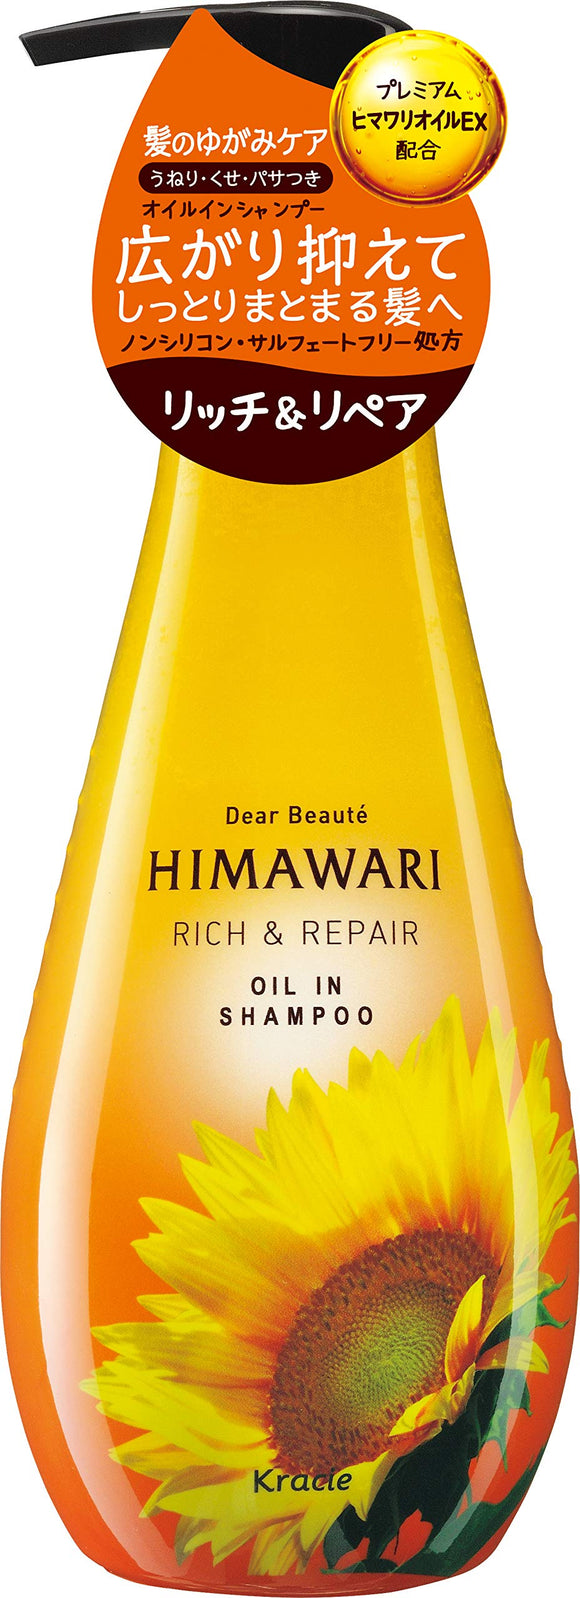 Dear Beaute Oil-in Shampoo (Rich & Repair) Pump 500mL